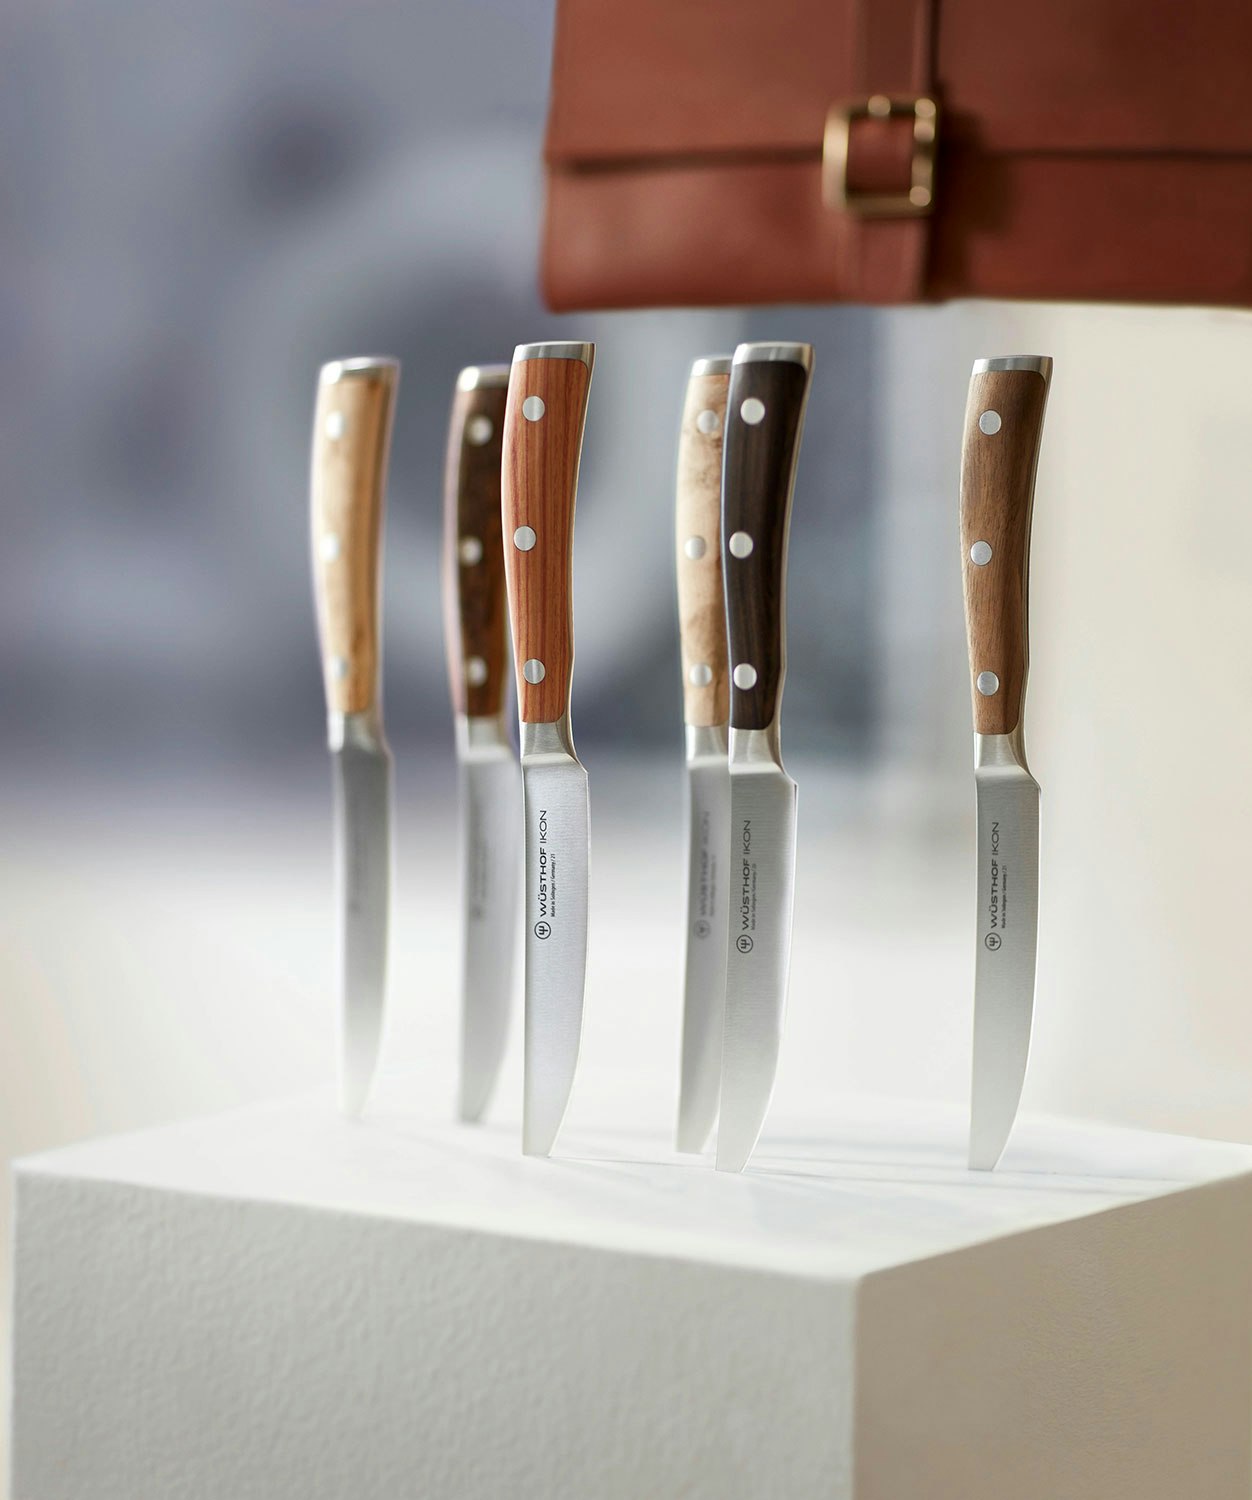 https://royaldesign.com/image/2/wusthof-ikon-steak-knives-with-case-5?w=800&quality=80